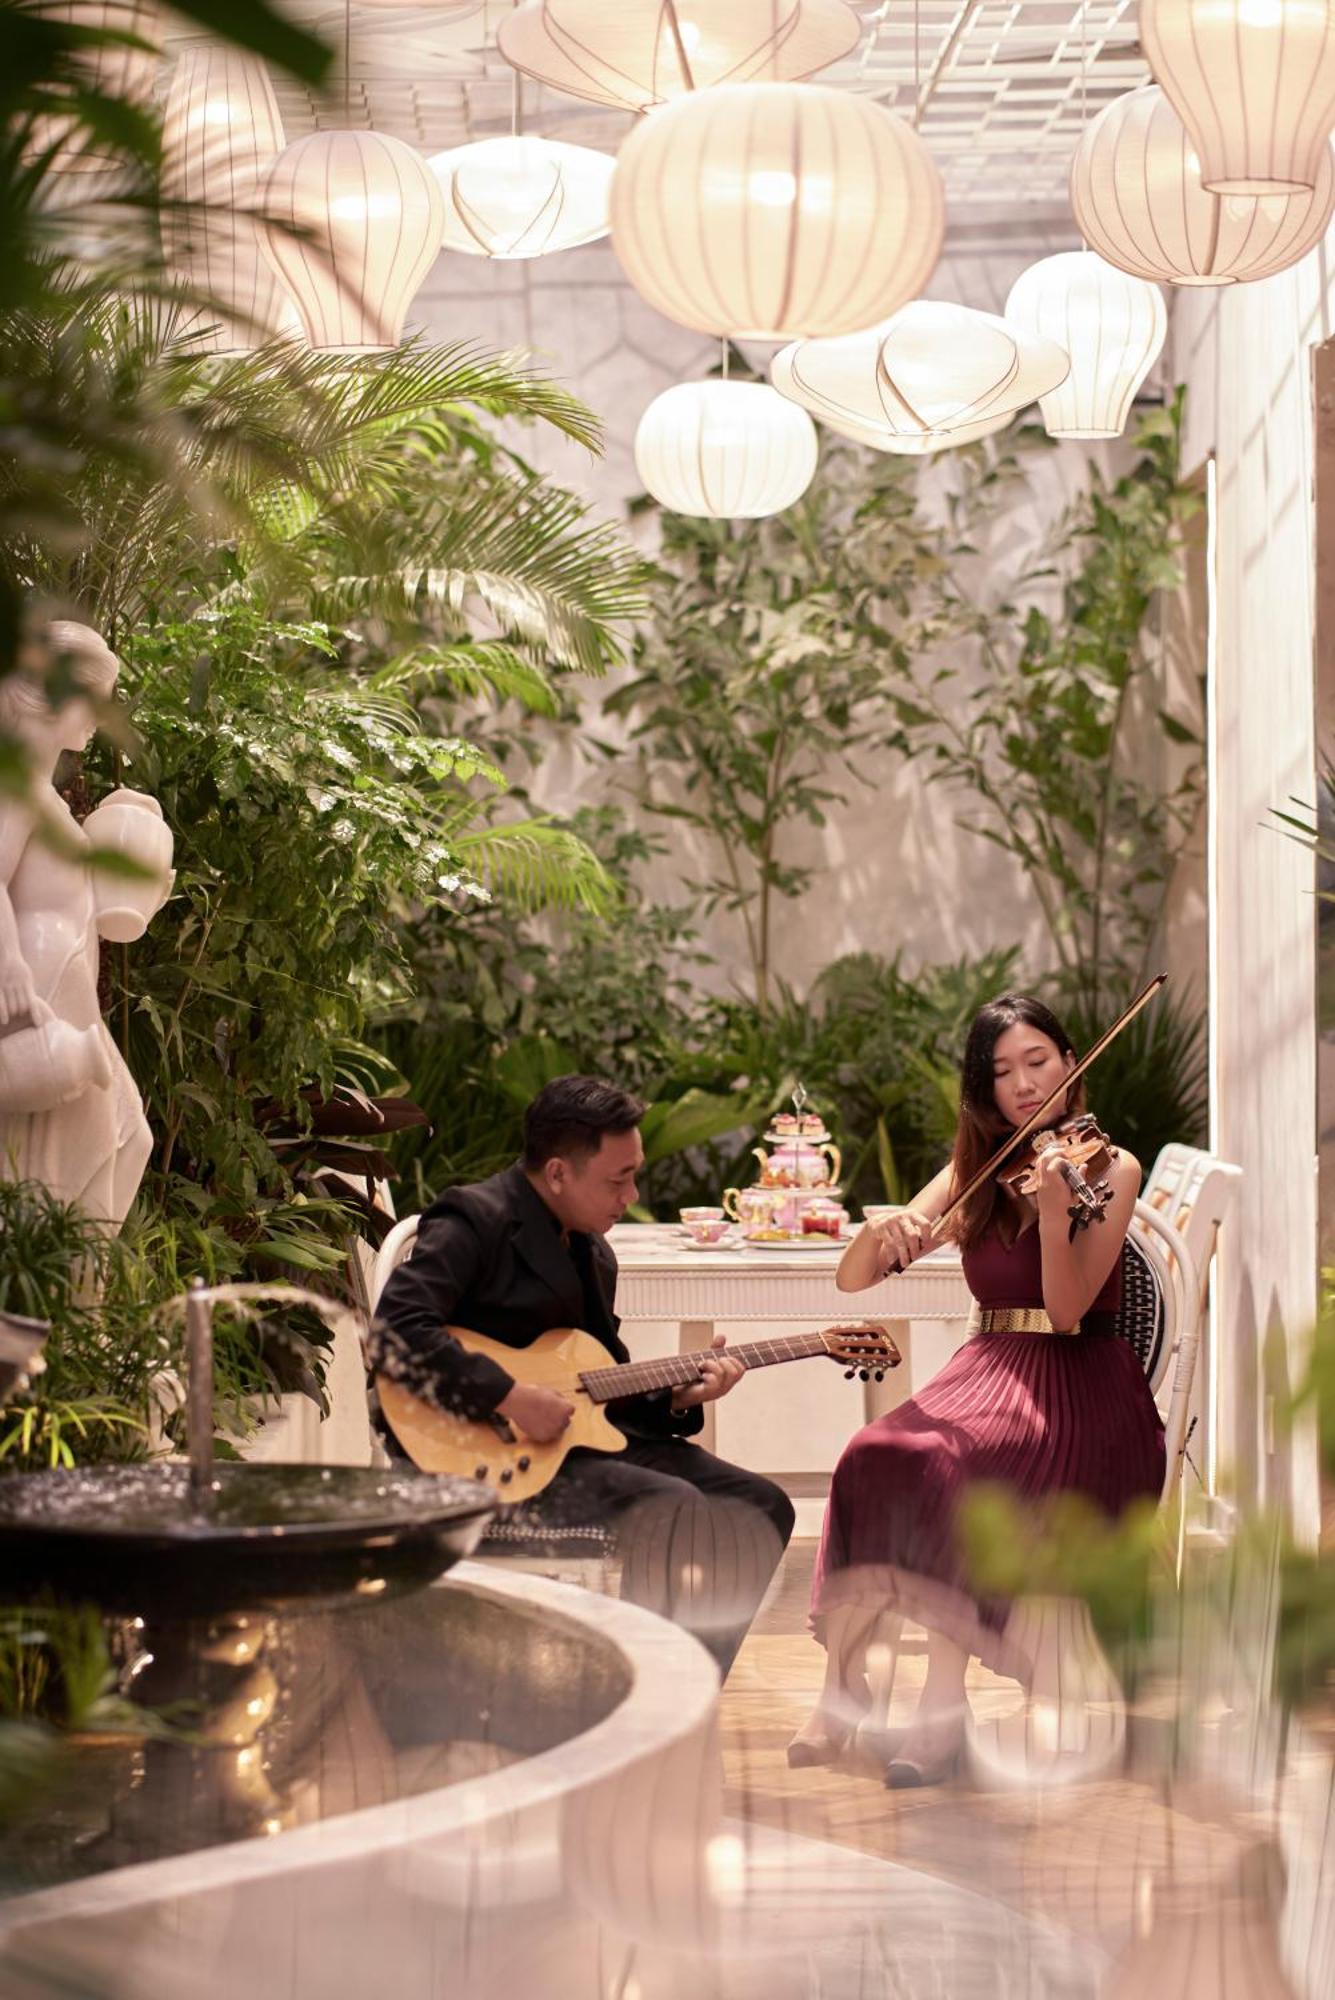 Silverland May Hotel Ho Chi Minh-Byen Eksteriør billede